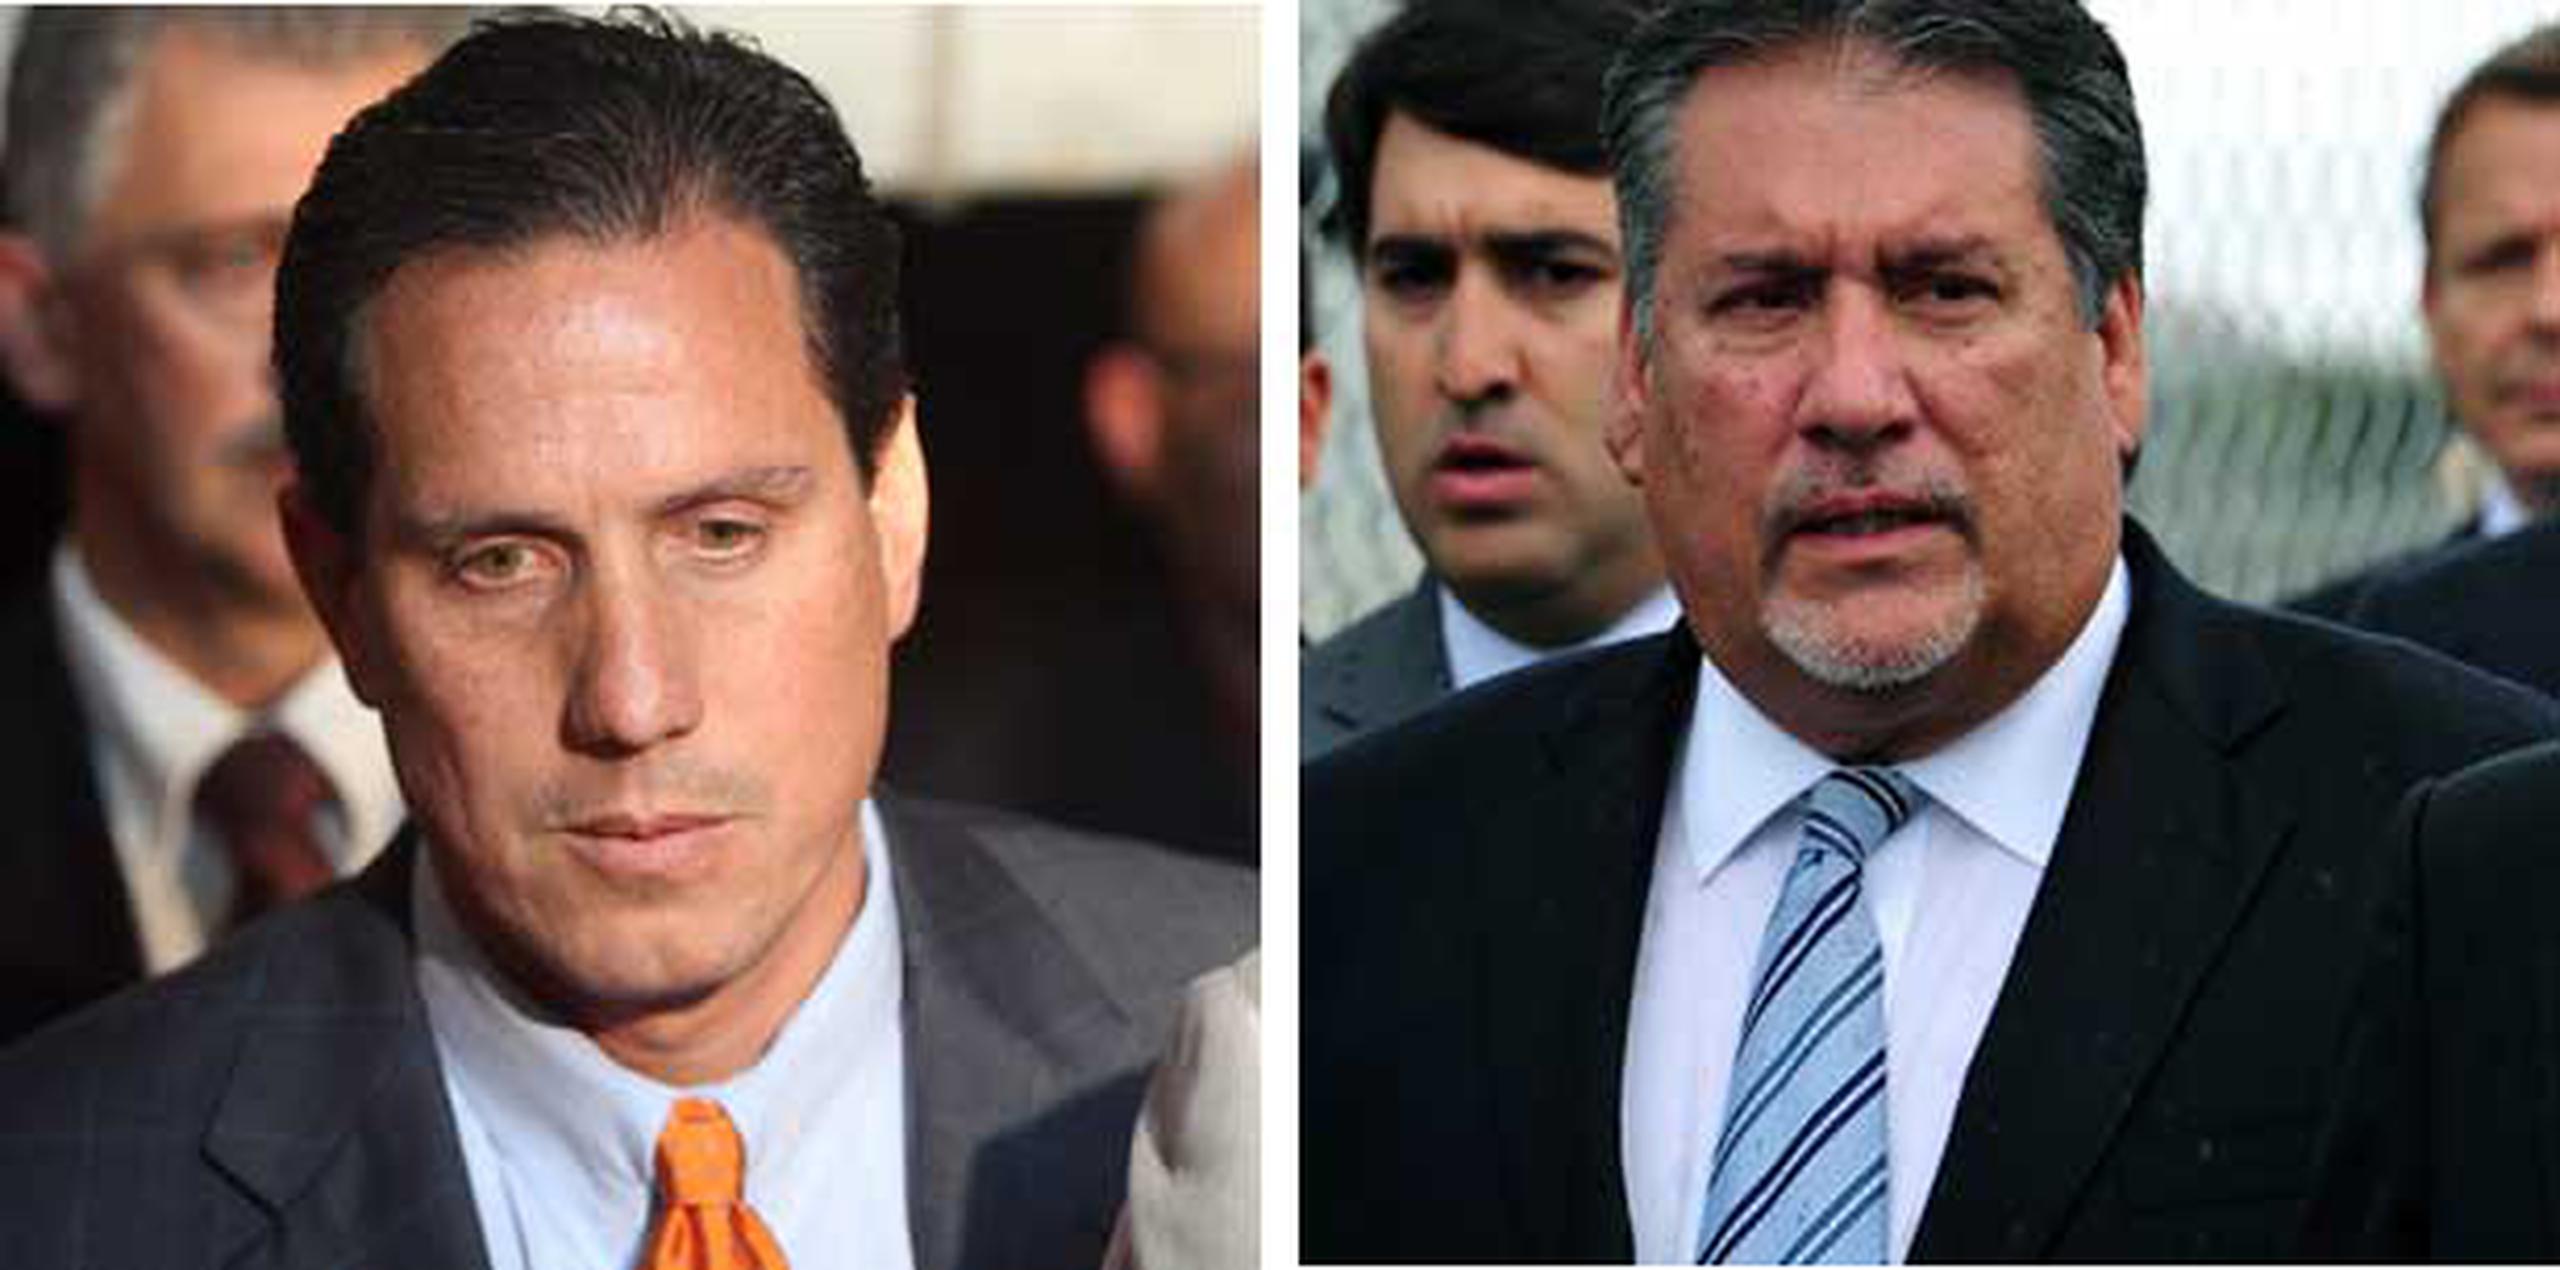 Héctor Martínez Maldonado y Juan Bravo Fernández fueron encontrados culpables en marzo de 2011 por cargos de soborno relacionados a un viaje a Las Vegas. (Archivo)